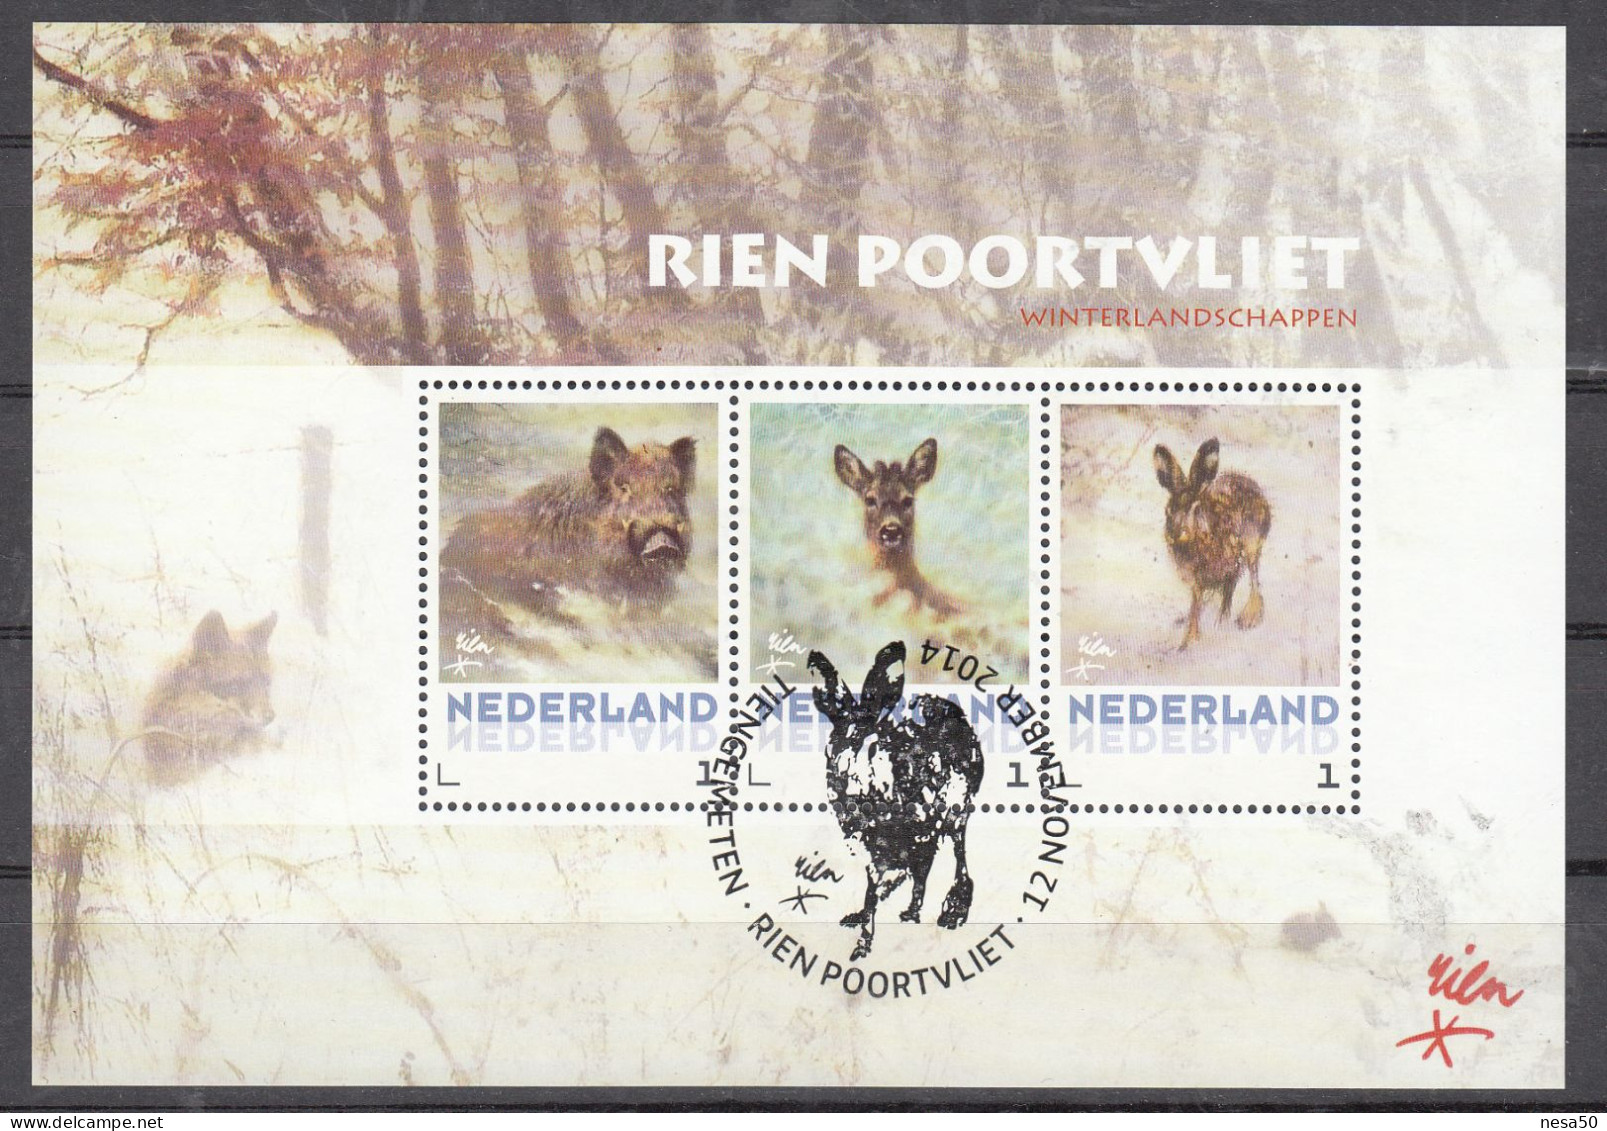 Nederland Persoonlijke Zegel, Rien Poortvliet, Wild Zwijn, Hert, Haas, Wild Boar, Deer, Hare, Speciale Stempel - Usados